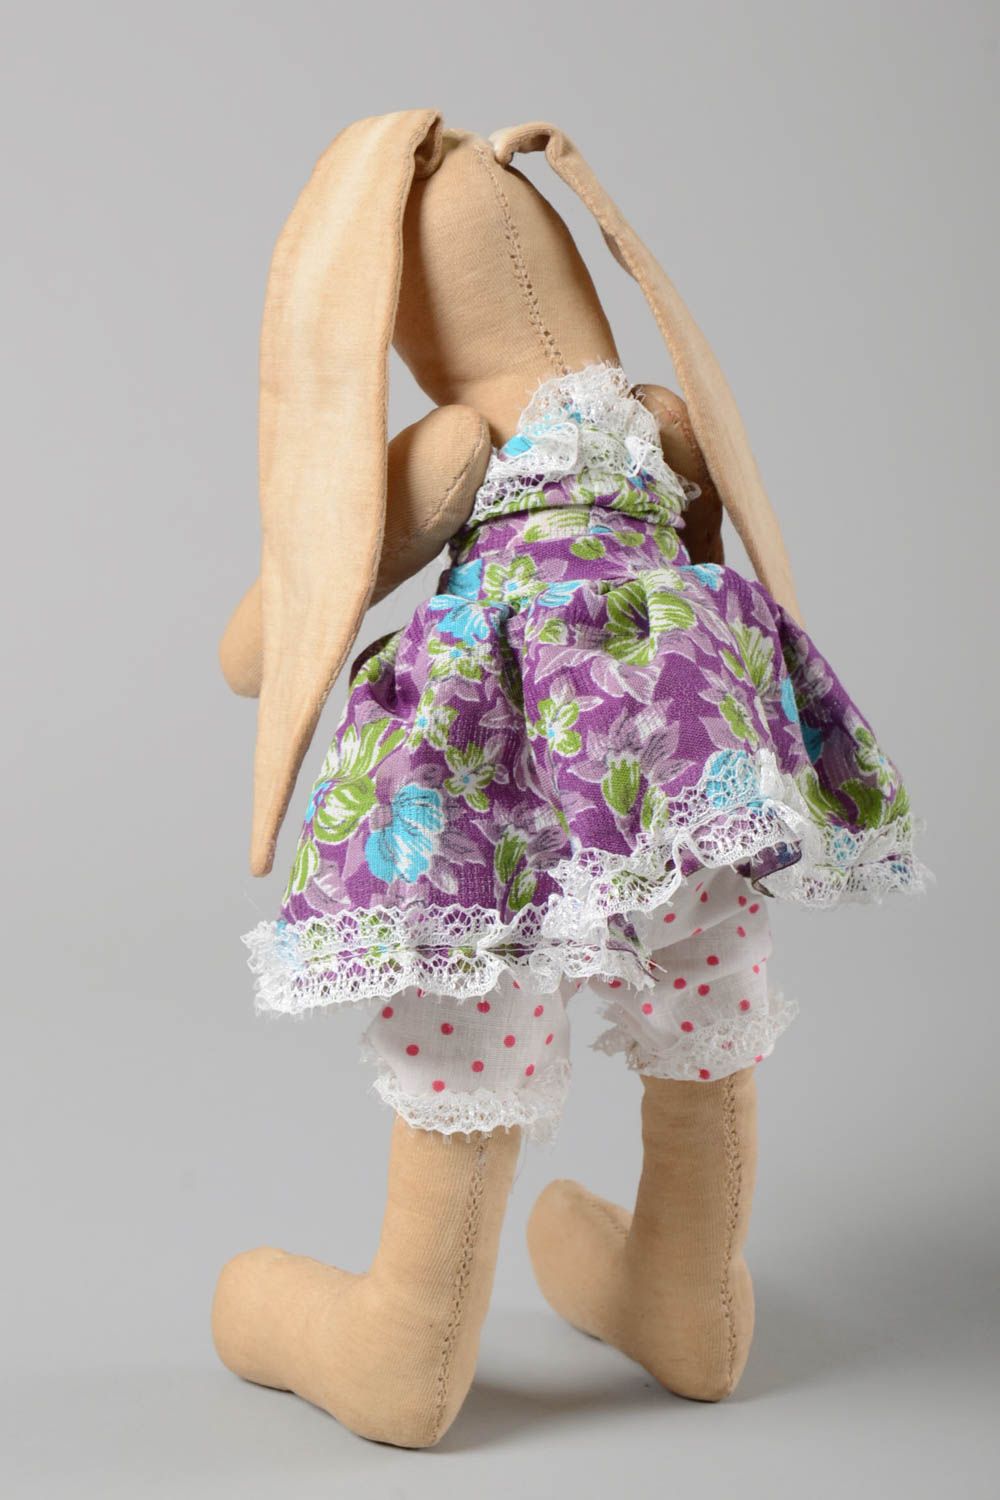 Unusual handmade rag doll fabric soft toy stuffed toy nursery design photo 4